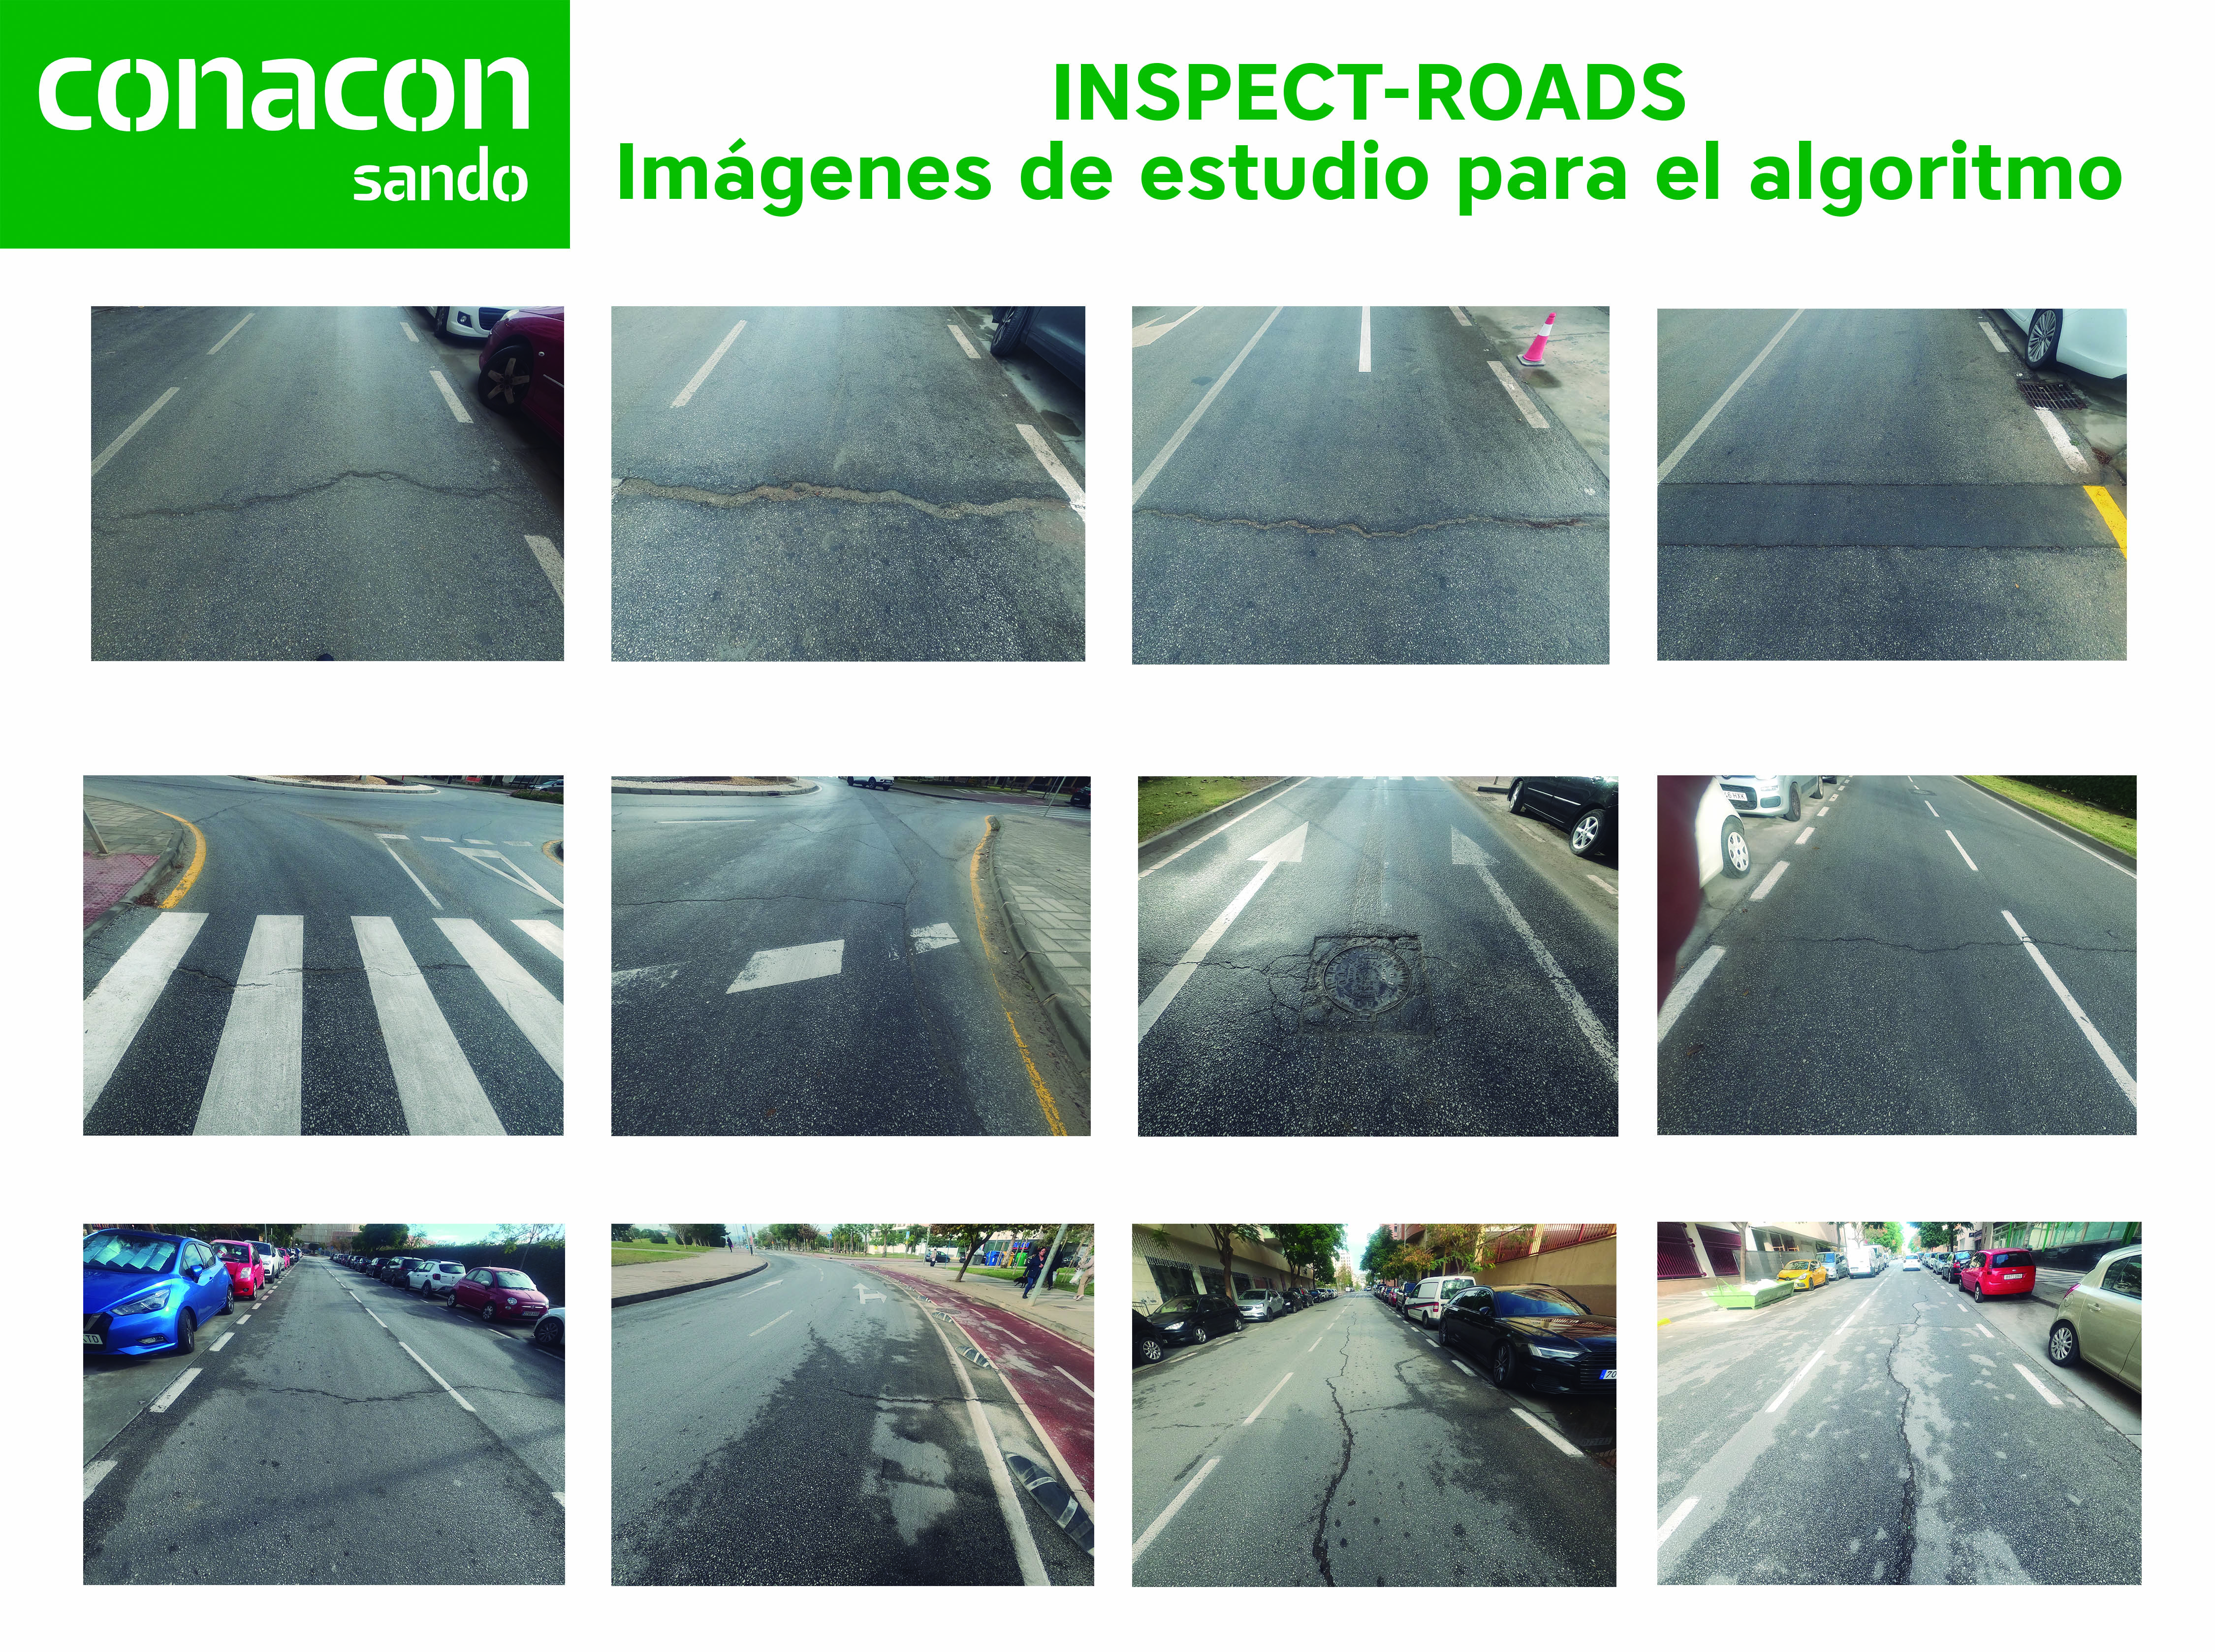 Inspect-roads-imagenes-algoritmo-conacon-SANDO